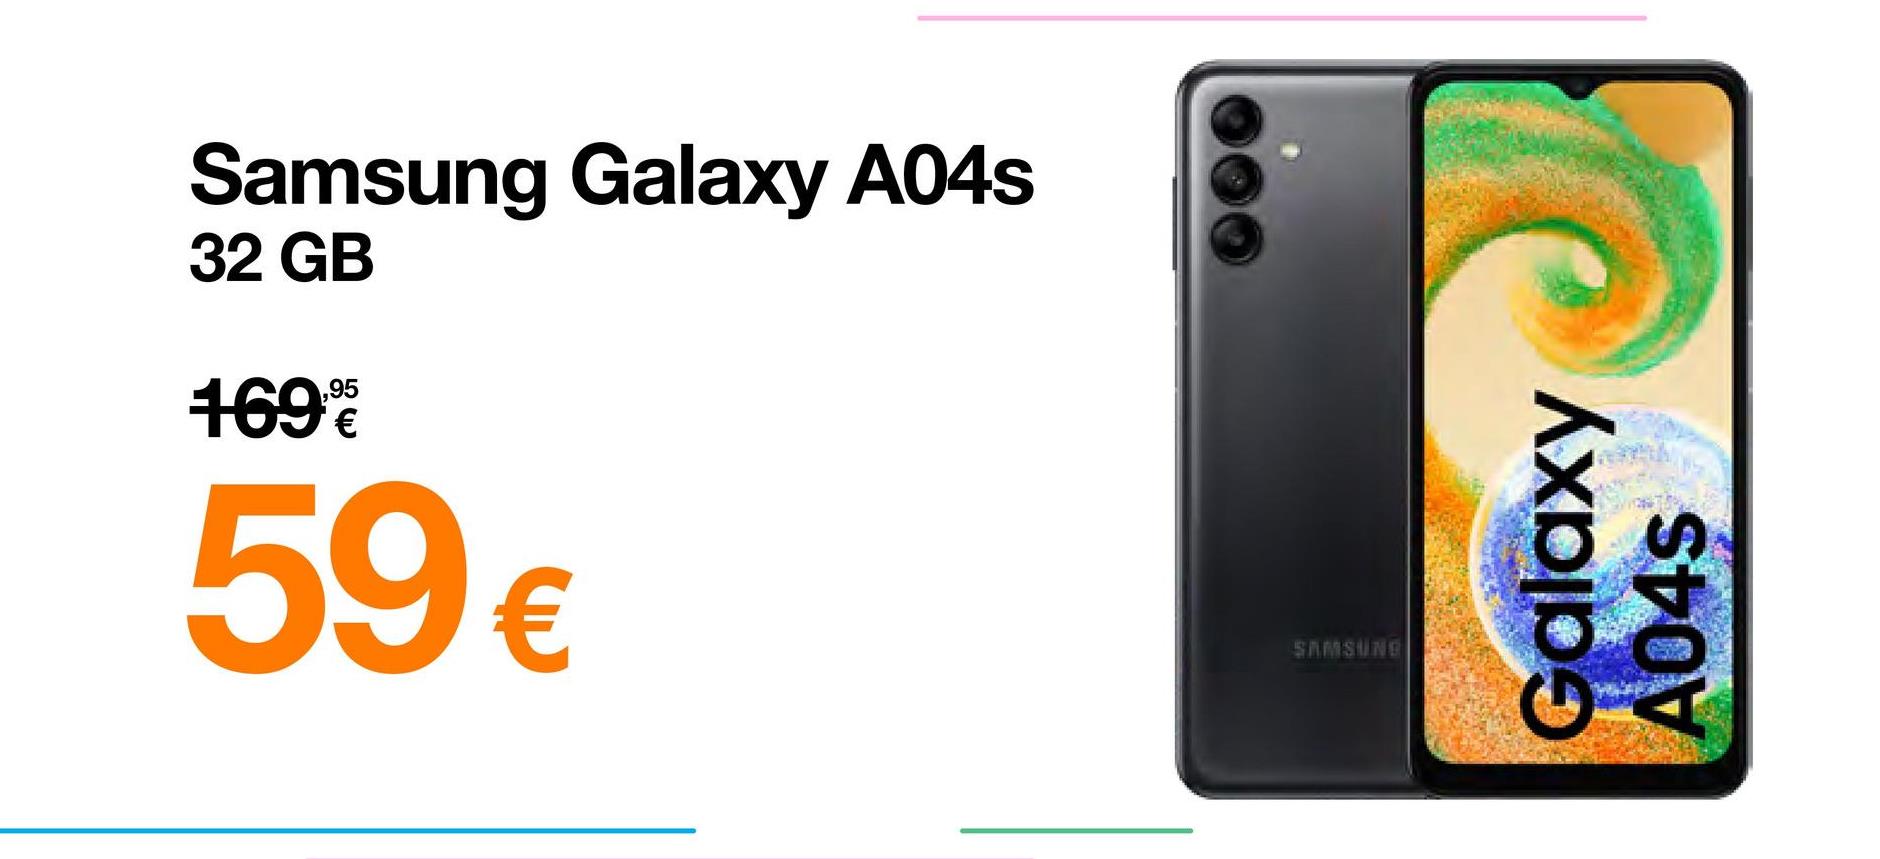 Samsung Galaxy A04s
32 GB
169%
59 €
SAMSUNG
Galaxy
A04s